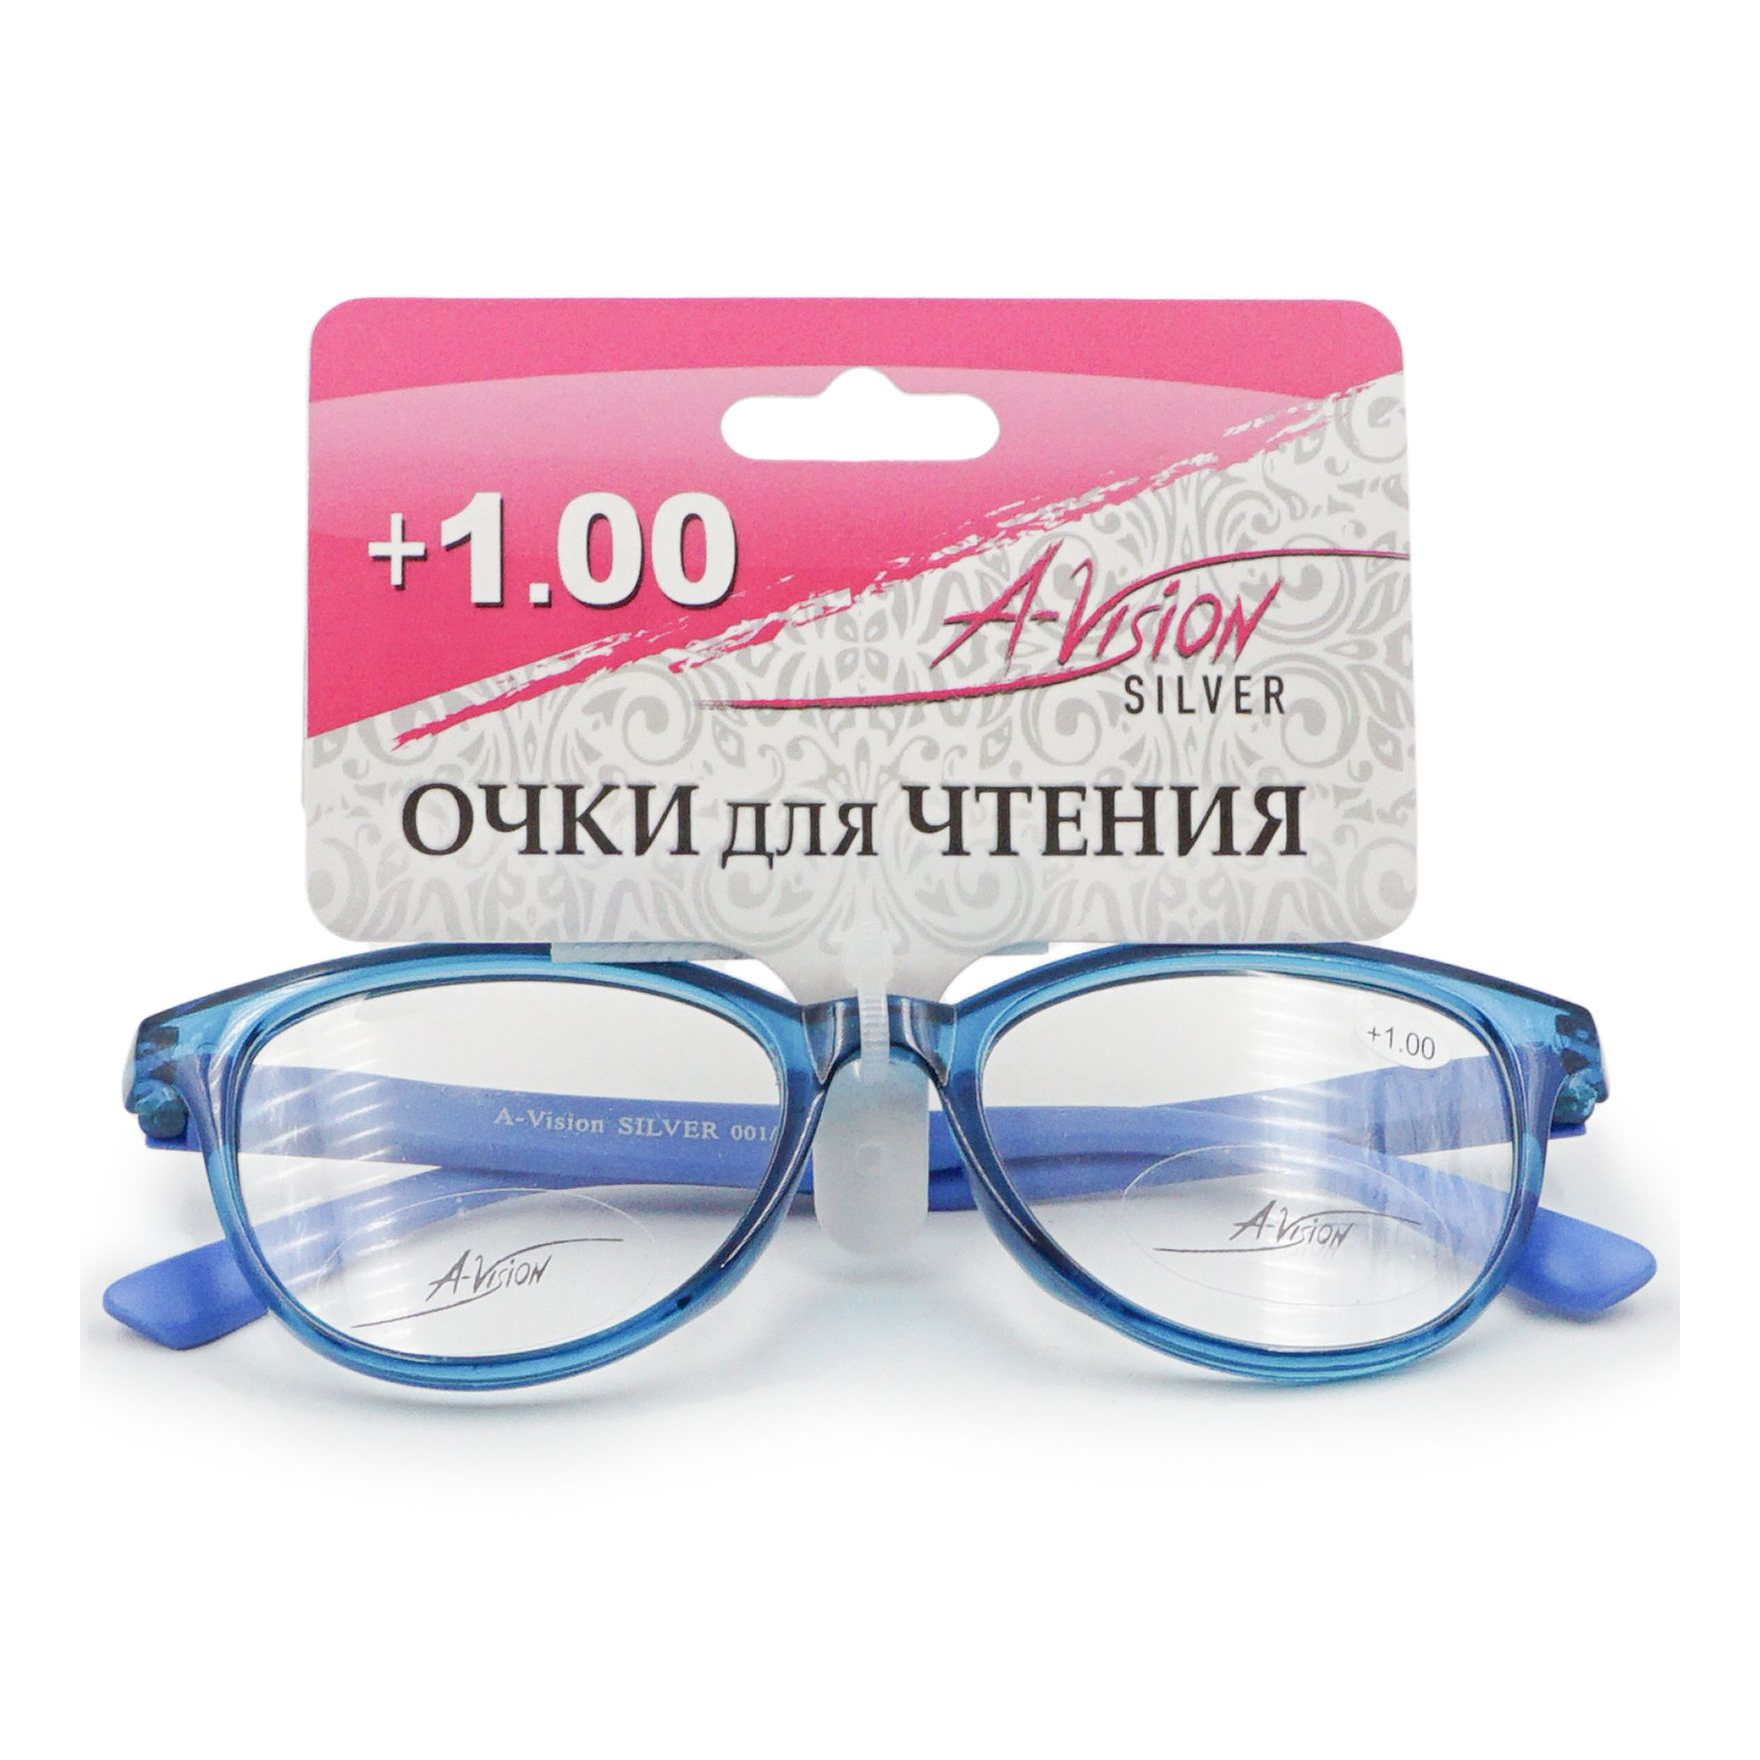 Купить Очки A-Vision для чтения +1, 0